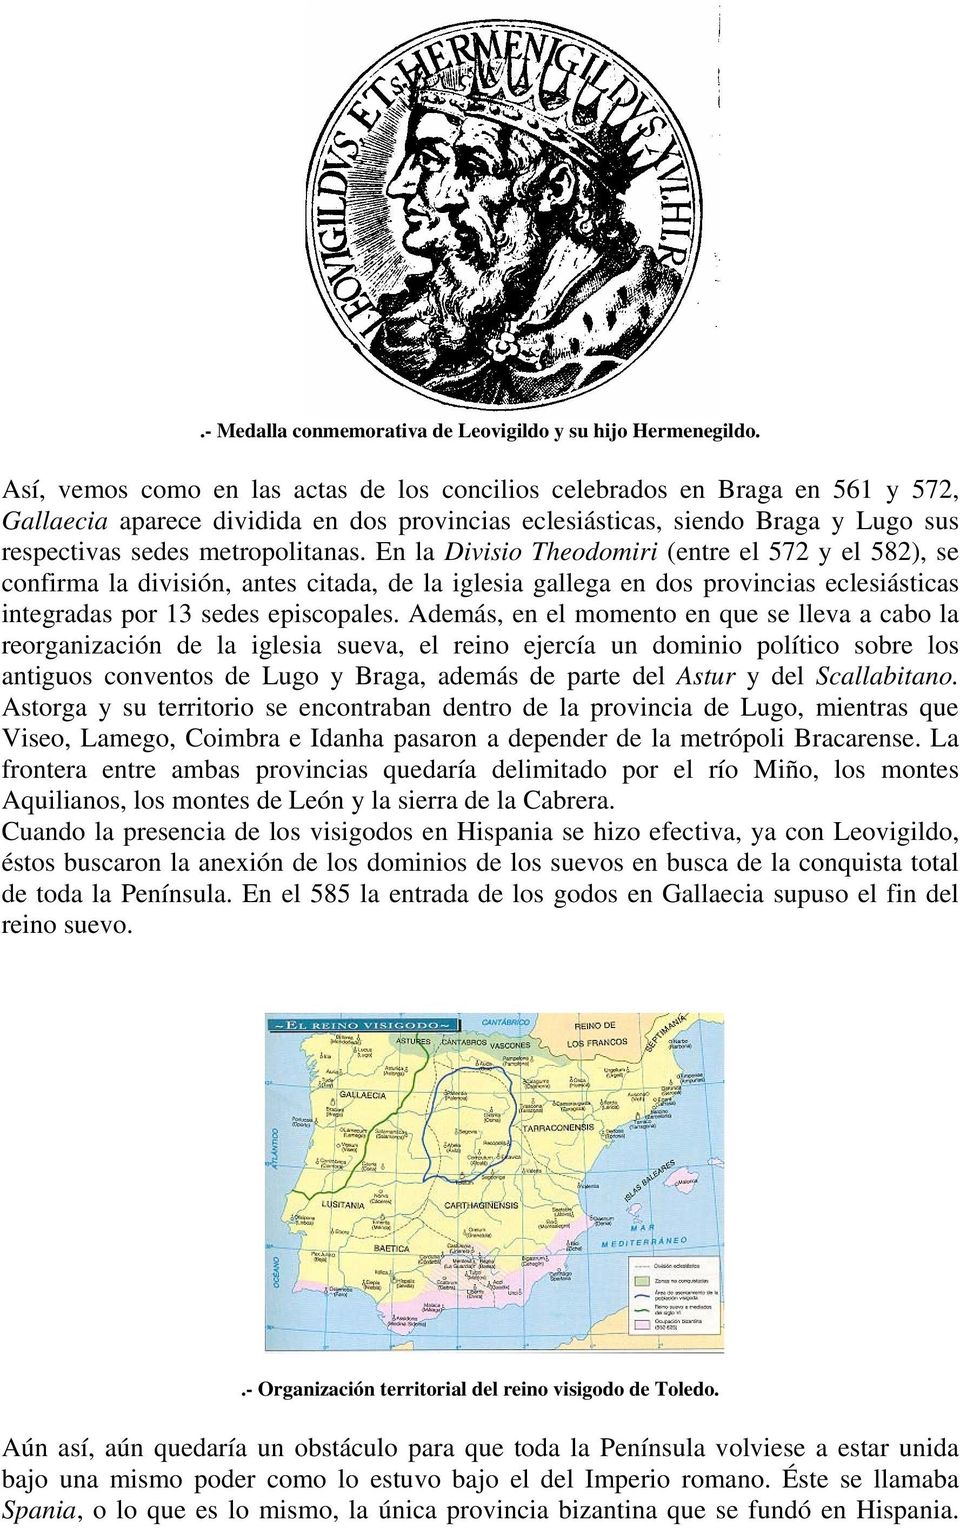 En la Divisio Theodomiri (entre el 572 y el 582), se confirma la división, antes citada, de la iglesia gallega en dos provincias eclesiásticas integradas por 13 sedes episcopales.